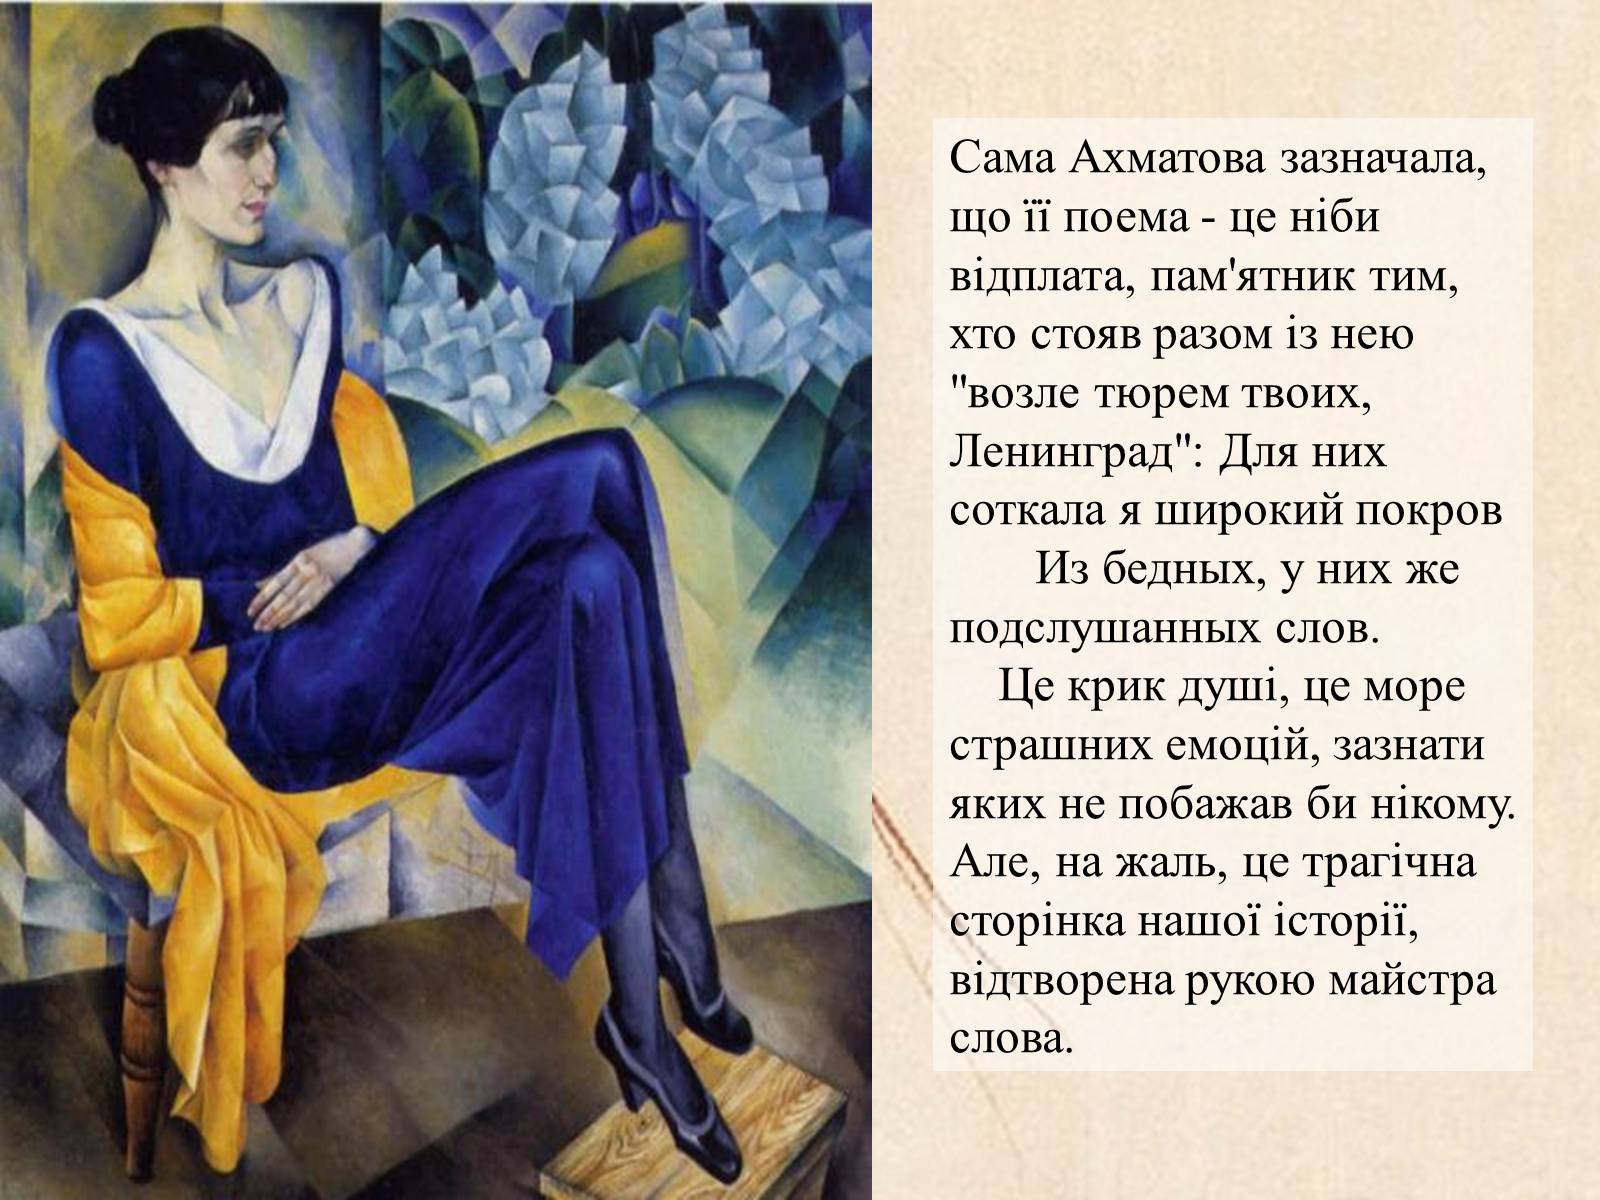 Первый опубликованный сборник стихов ахматовой. Иллюстрации к стихотворениям Ахматовой.